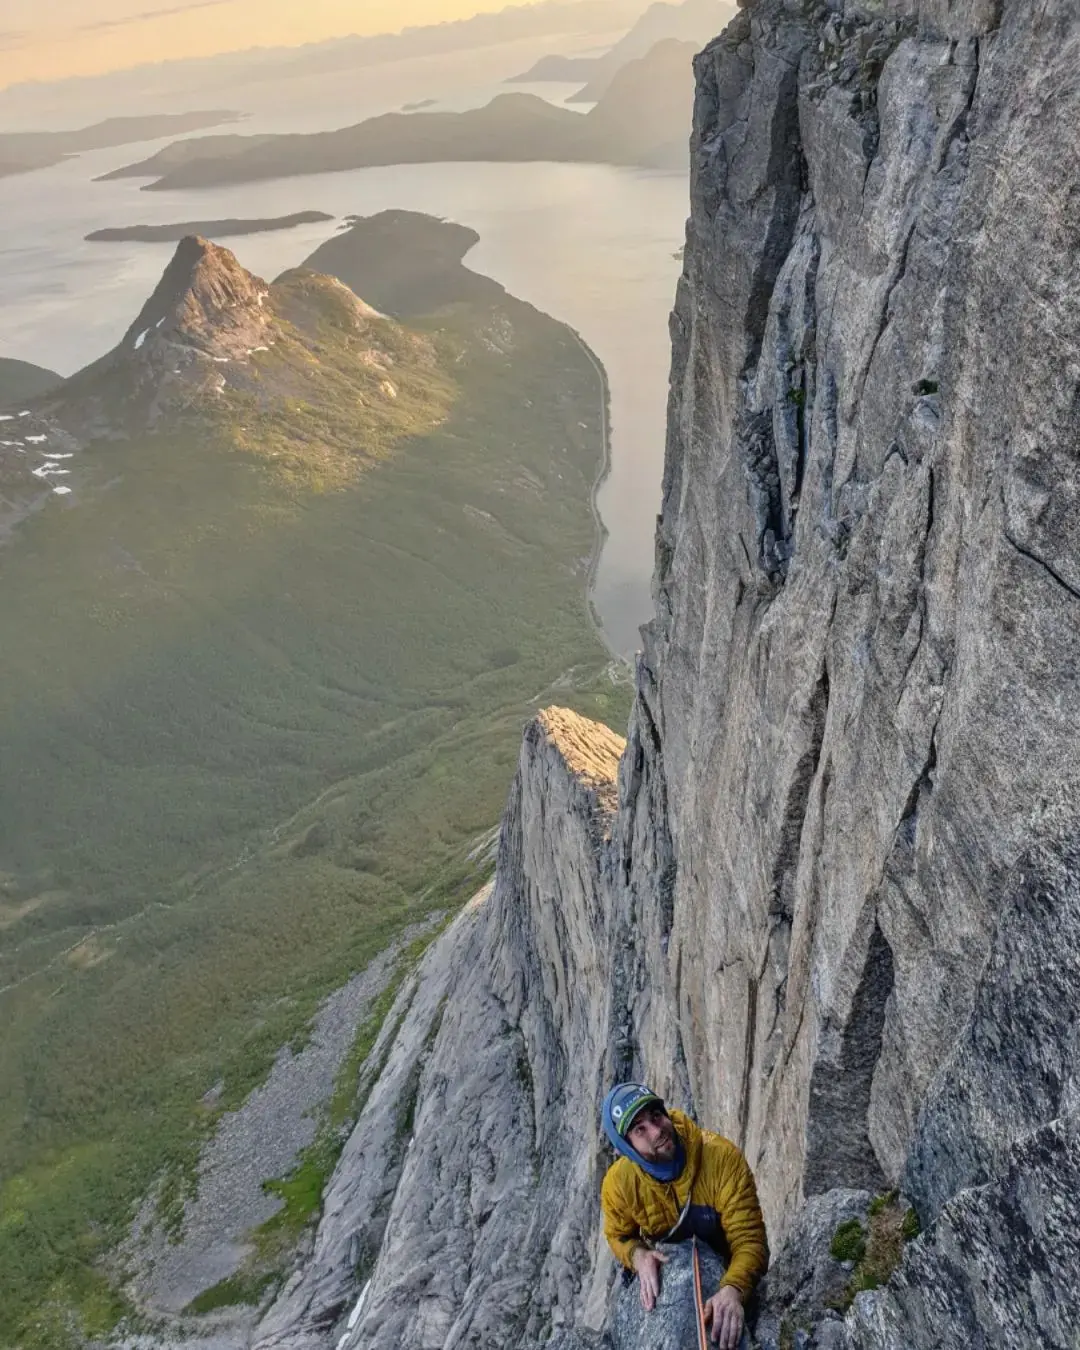 на маршруті "South West Face route" по північно-західній стіні гори Штетінд (Stetind) у Норвегії. Фото Joda Dolmans